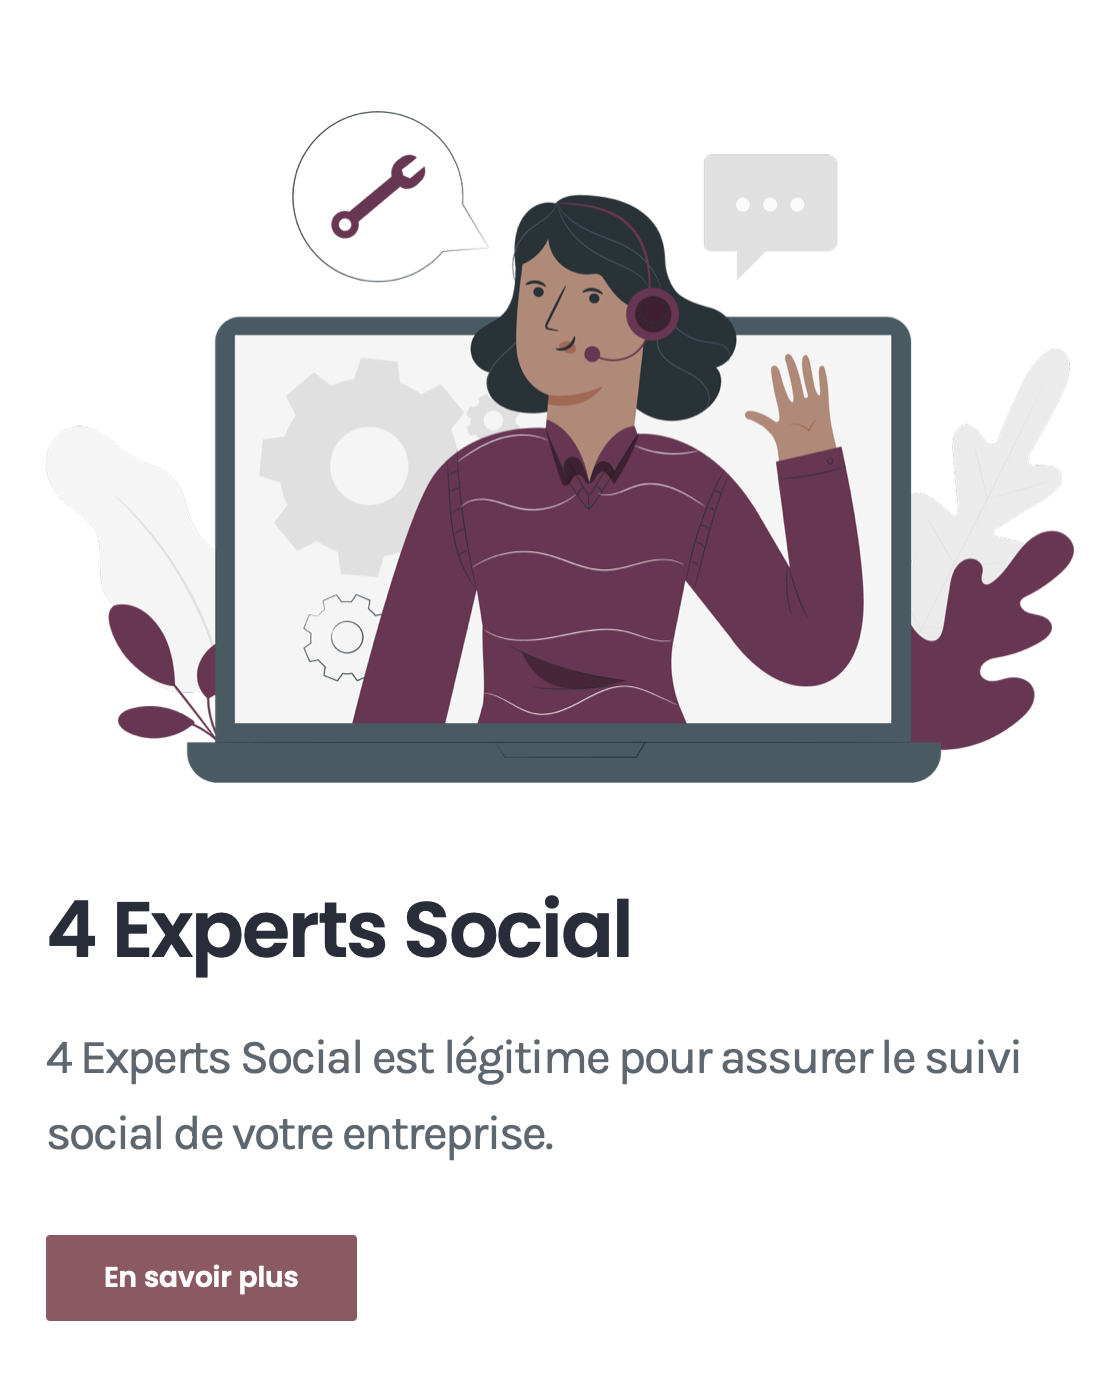 4 Experts Social